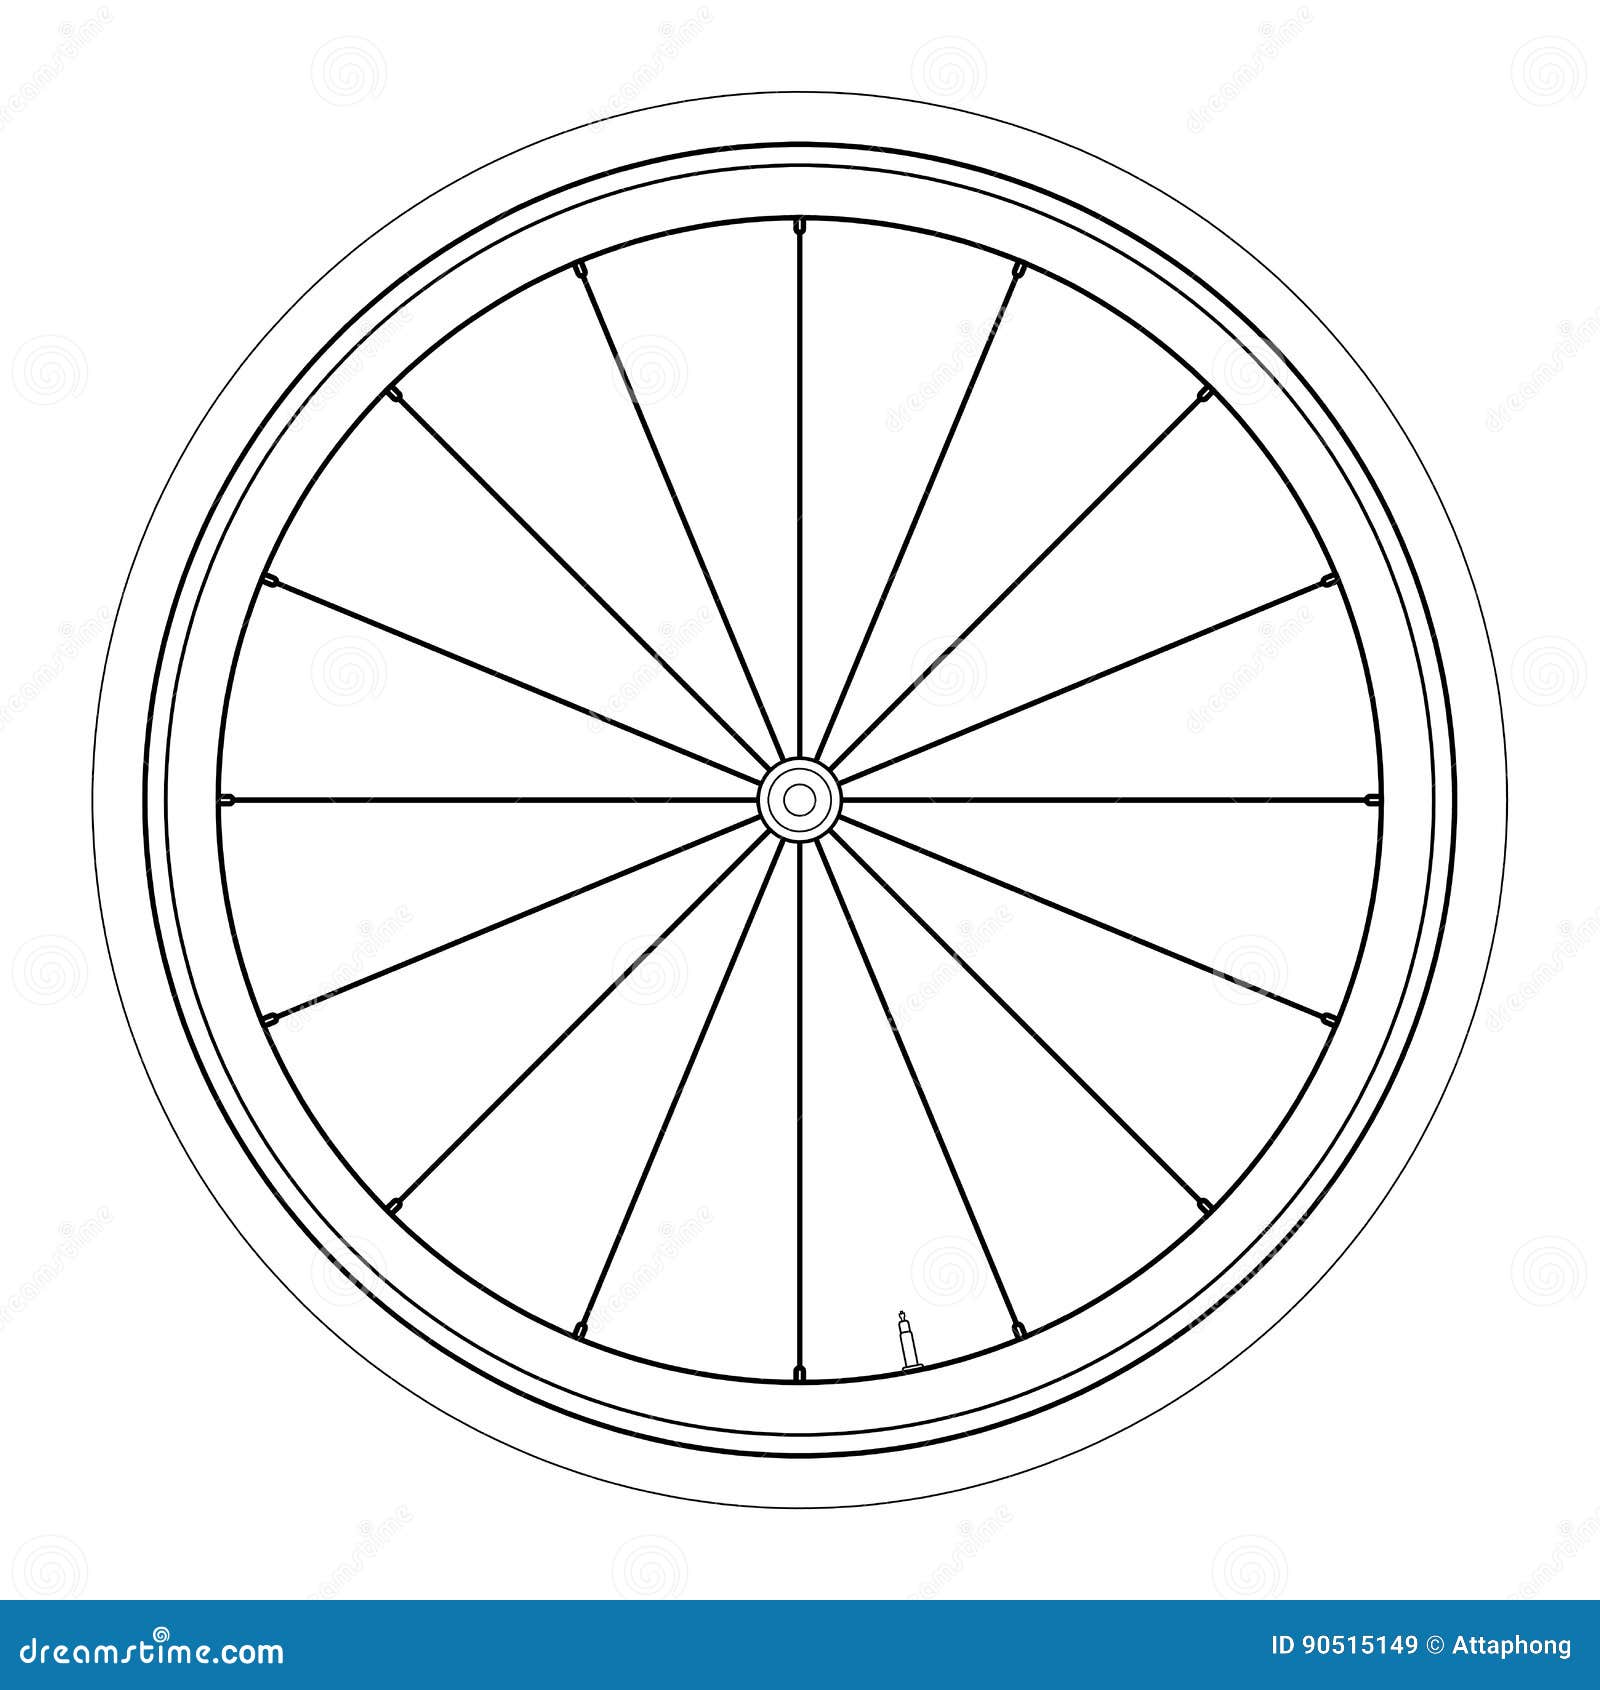 Колесо велосипед рисунок. Колесо сбоку вектор. Векторные колеса велосипед. Колесо велосипеда вектор. Колесо велосипеда рисованное.